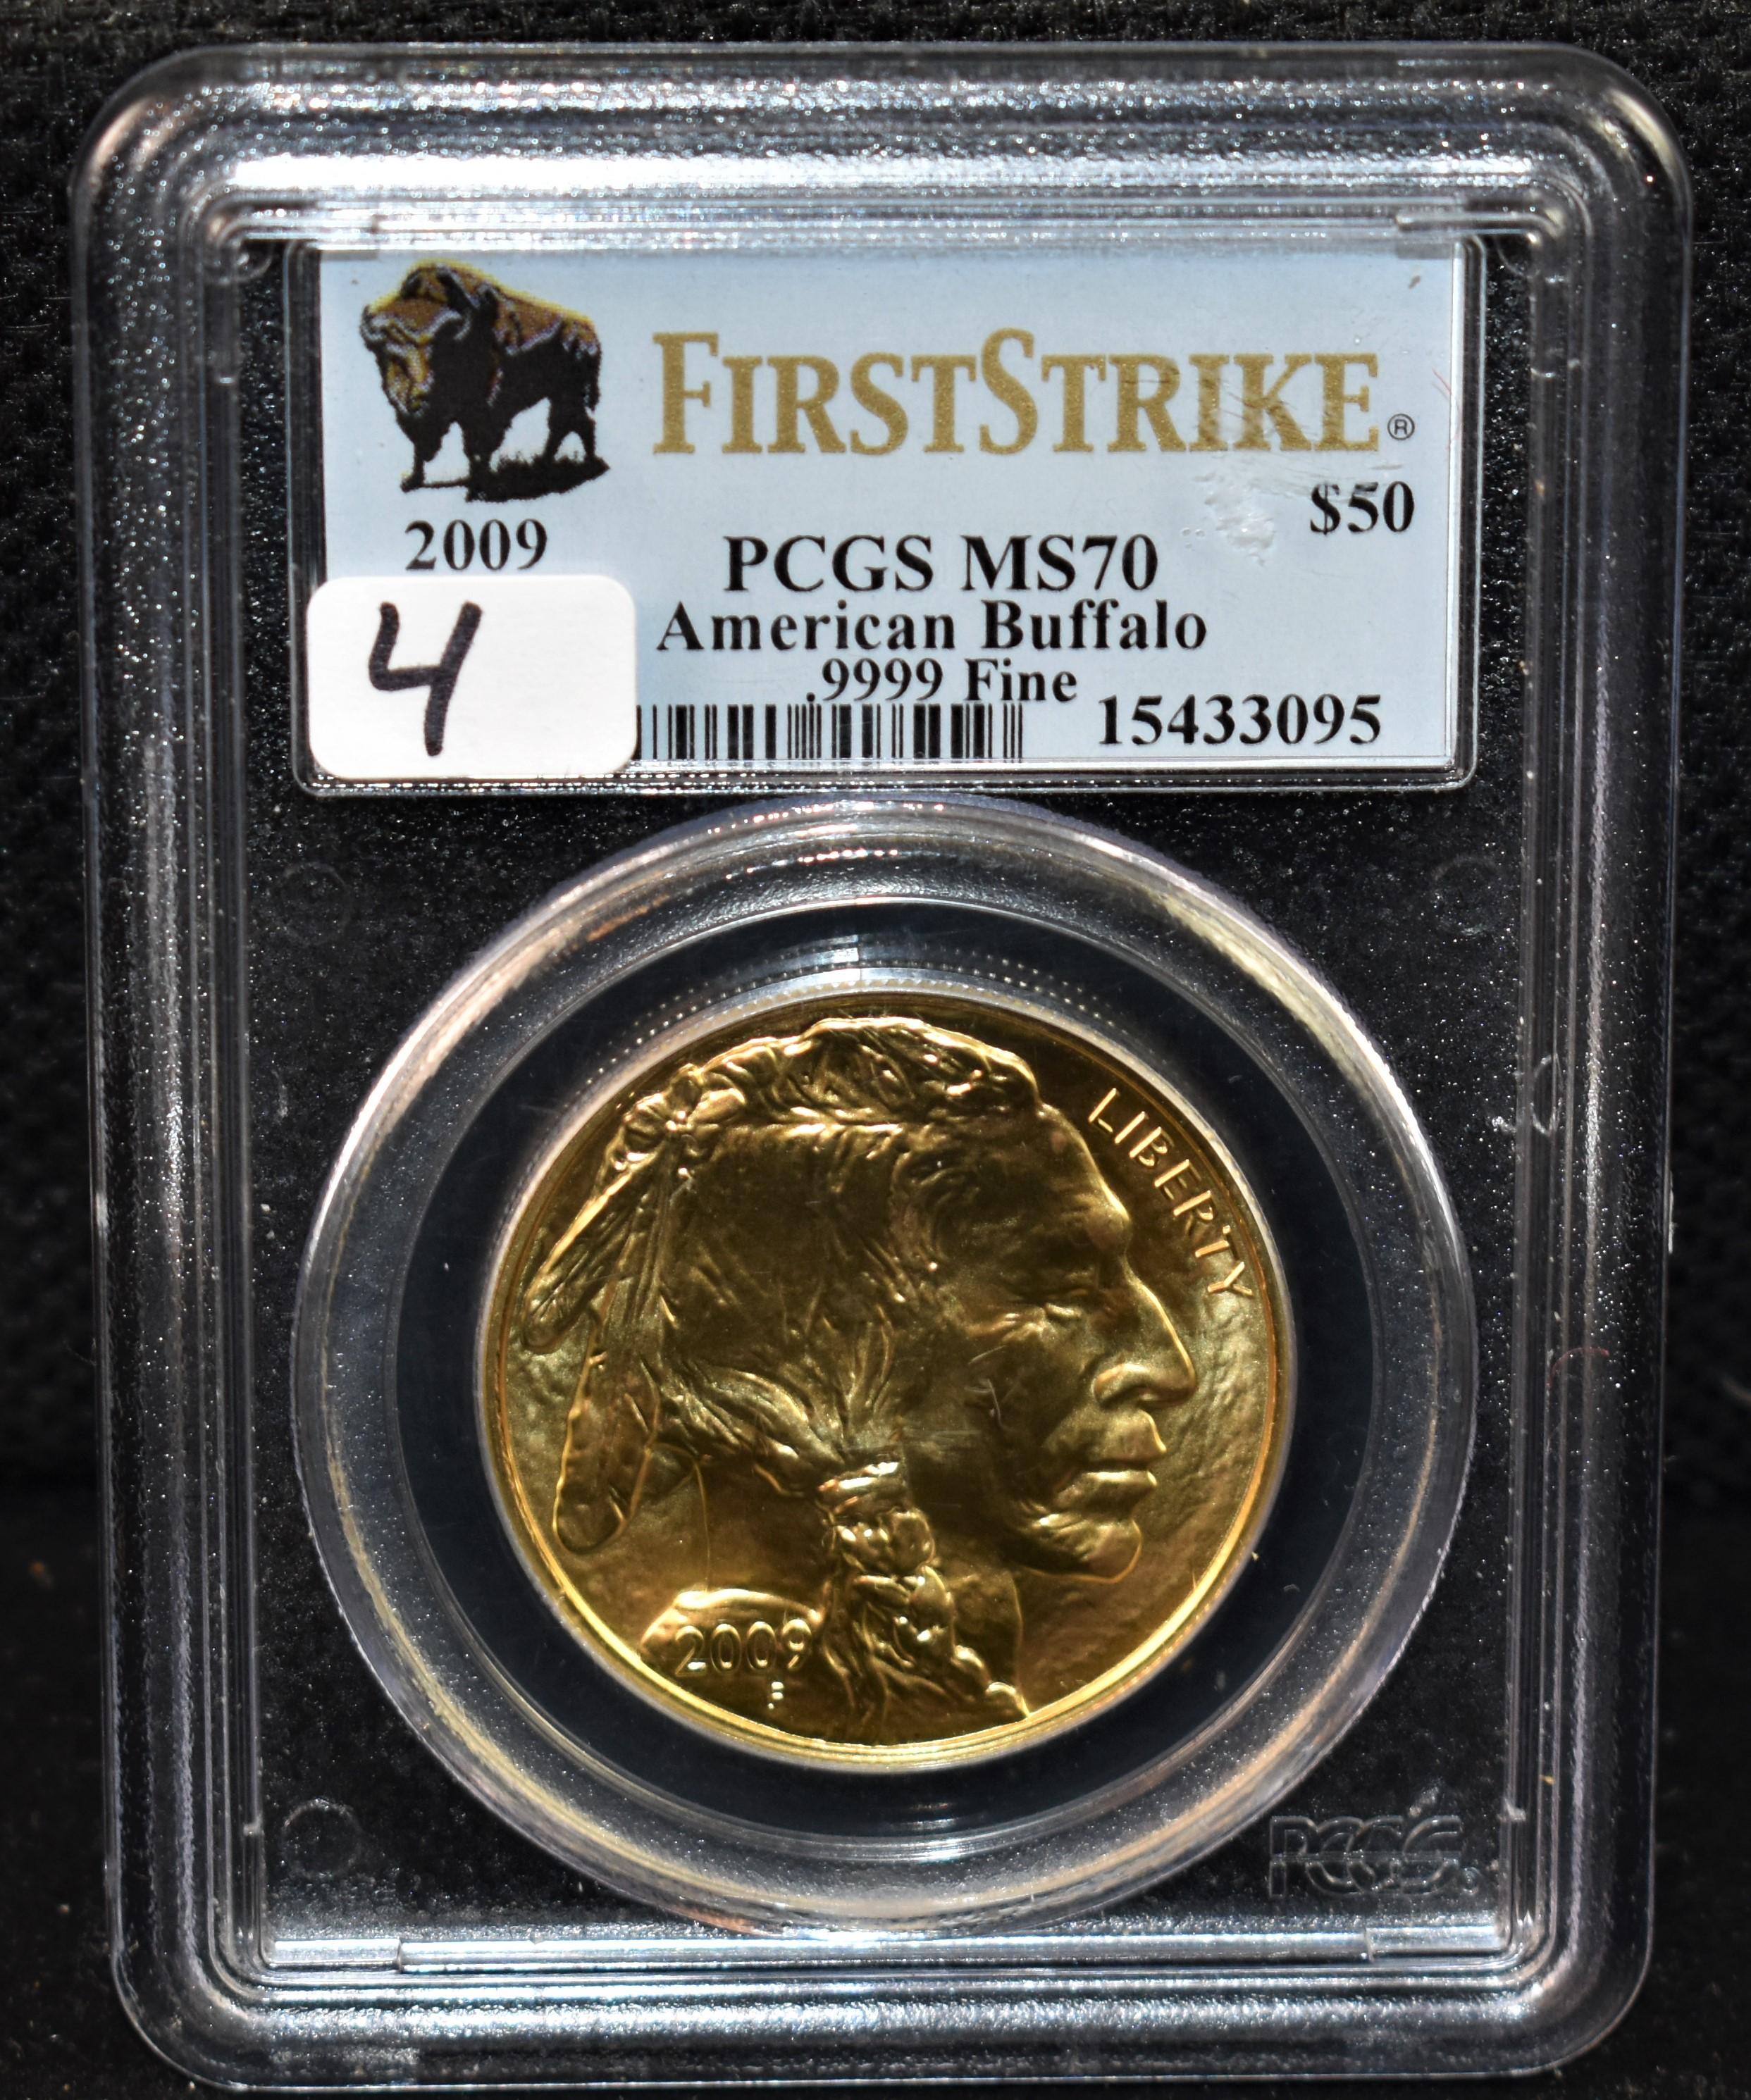 2009 $50 1ST STRIKE .9999 GOLD BUFFALO - PCGS MS70